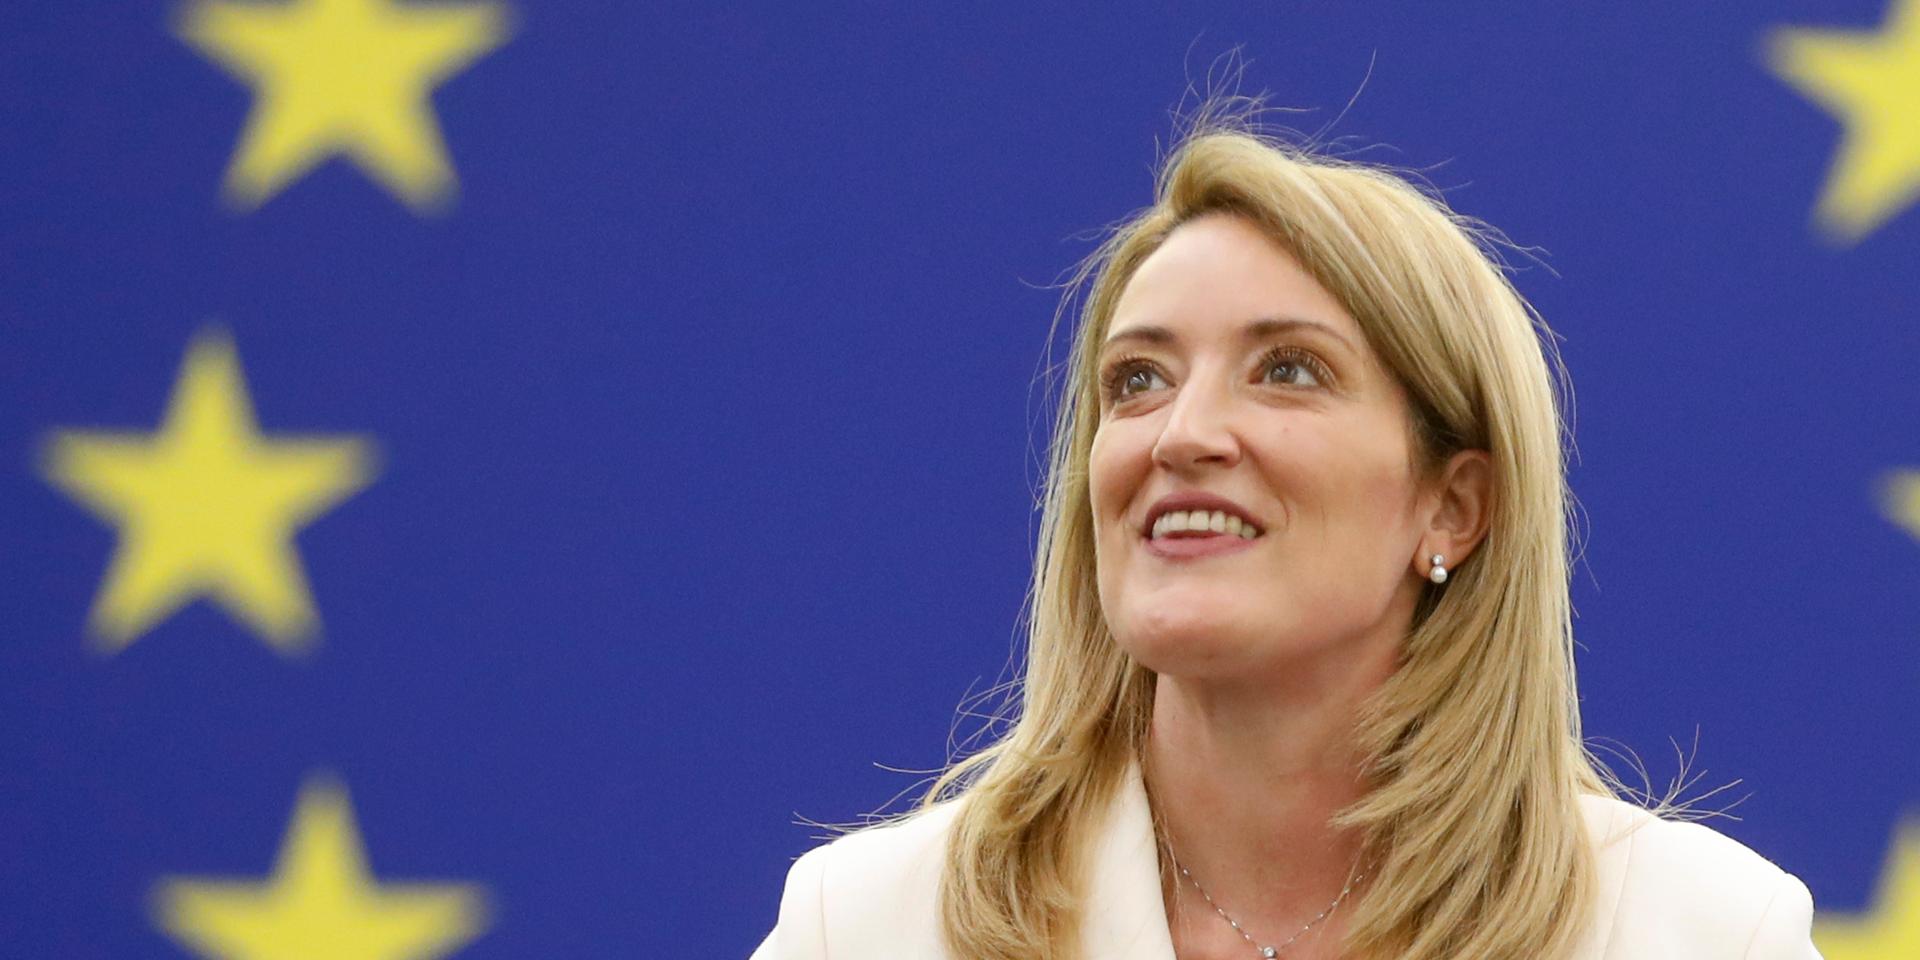 Roberta Metsola från konservativa Nationalistpartiet på Malta gläds efter att ha valts till talman i EU-parlamentet.